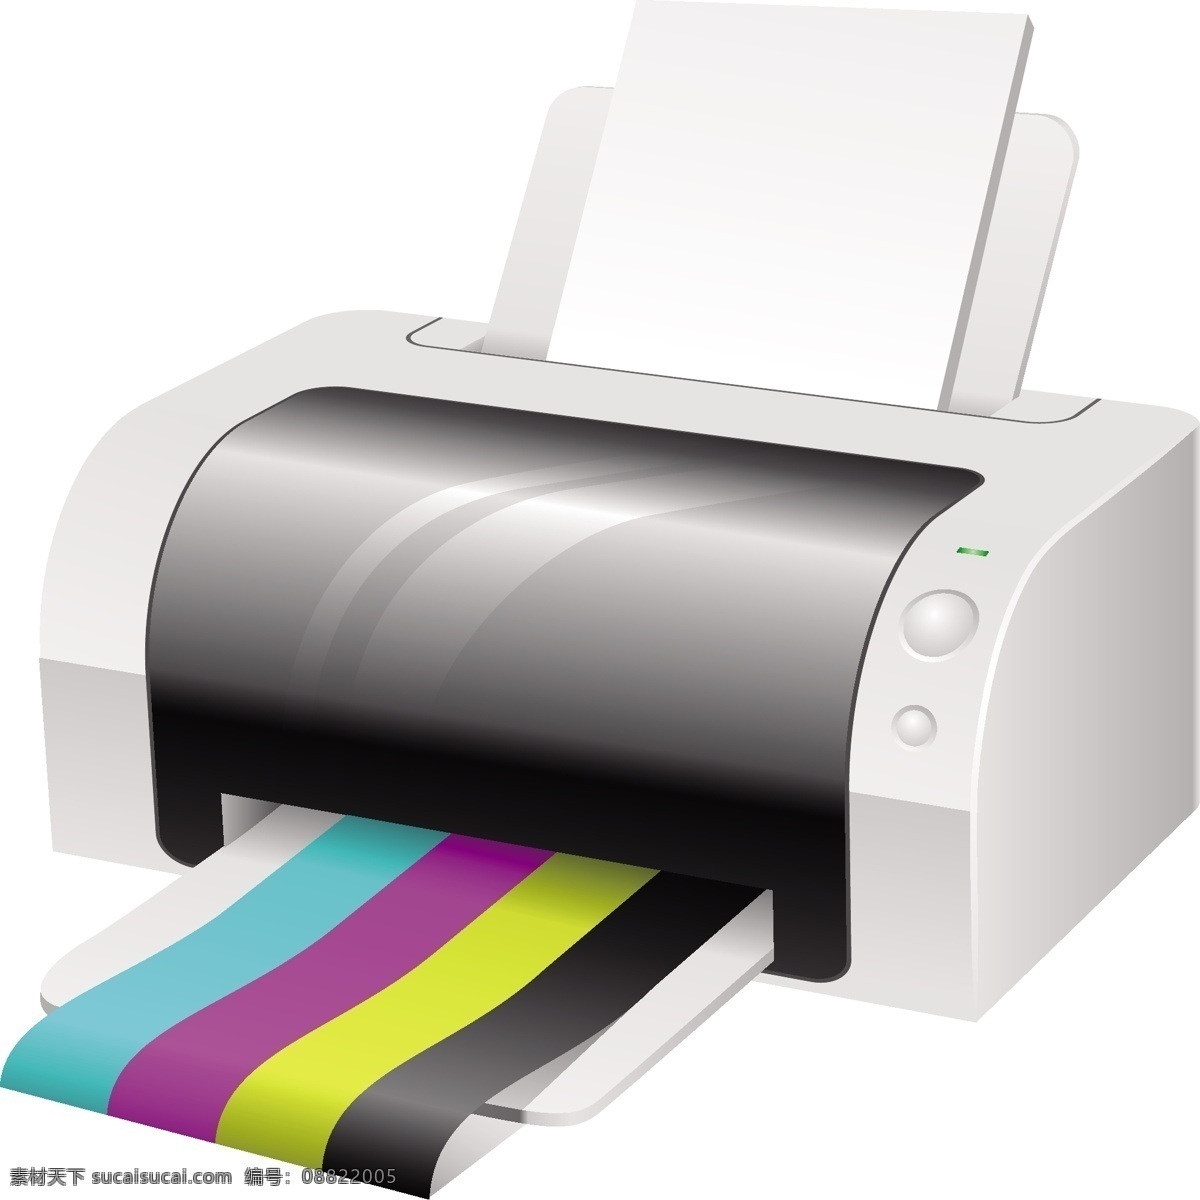 矢量打印机 打印机 图标 矢量 图形 艺术 激光打印机 打印纸 免费 报纸 激光 剪贴 画 其他矢量图